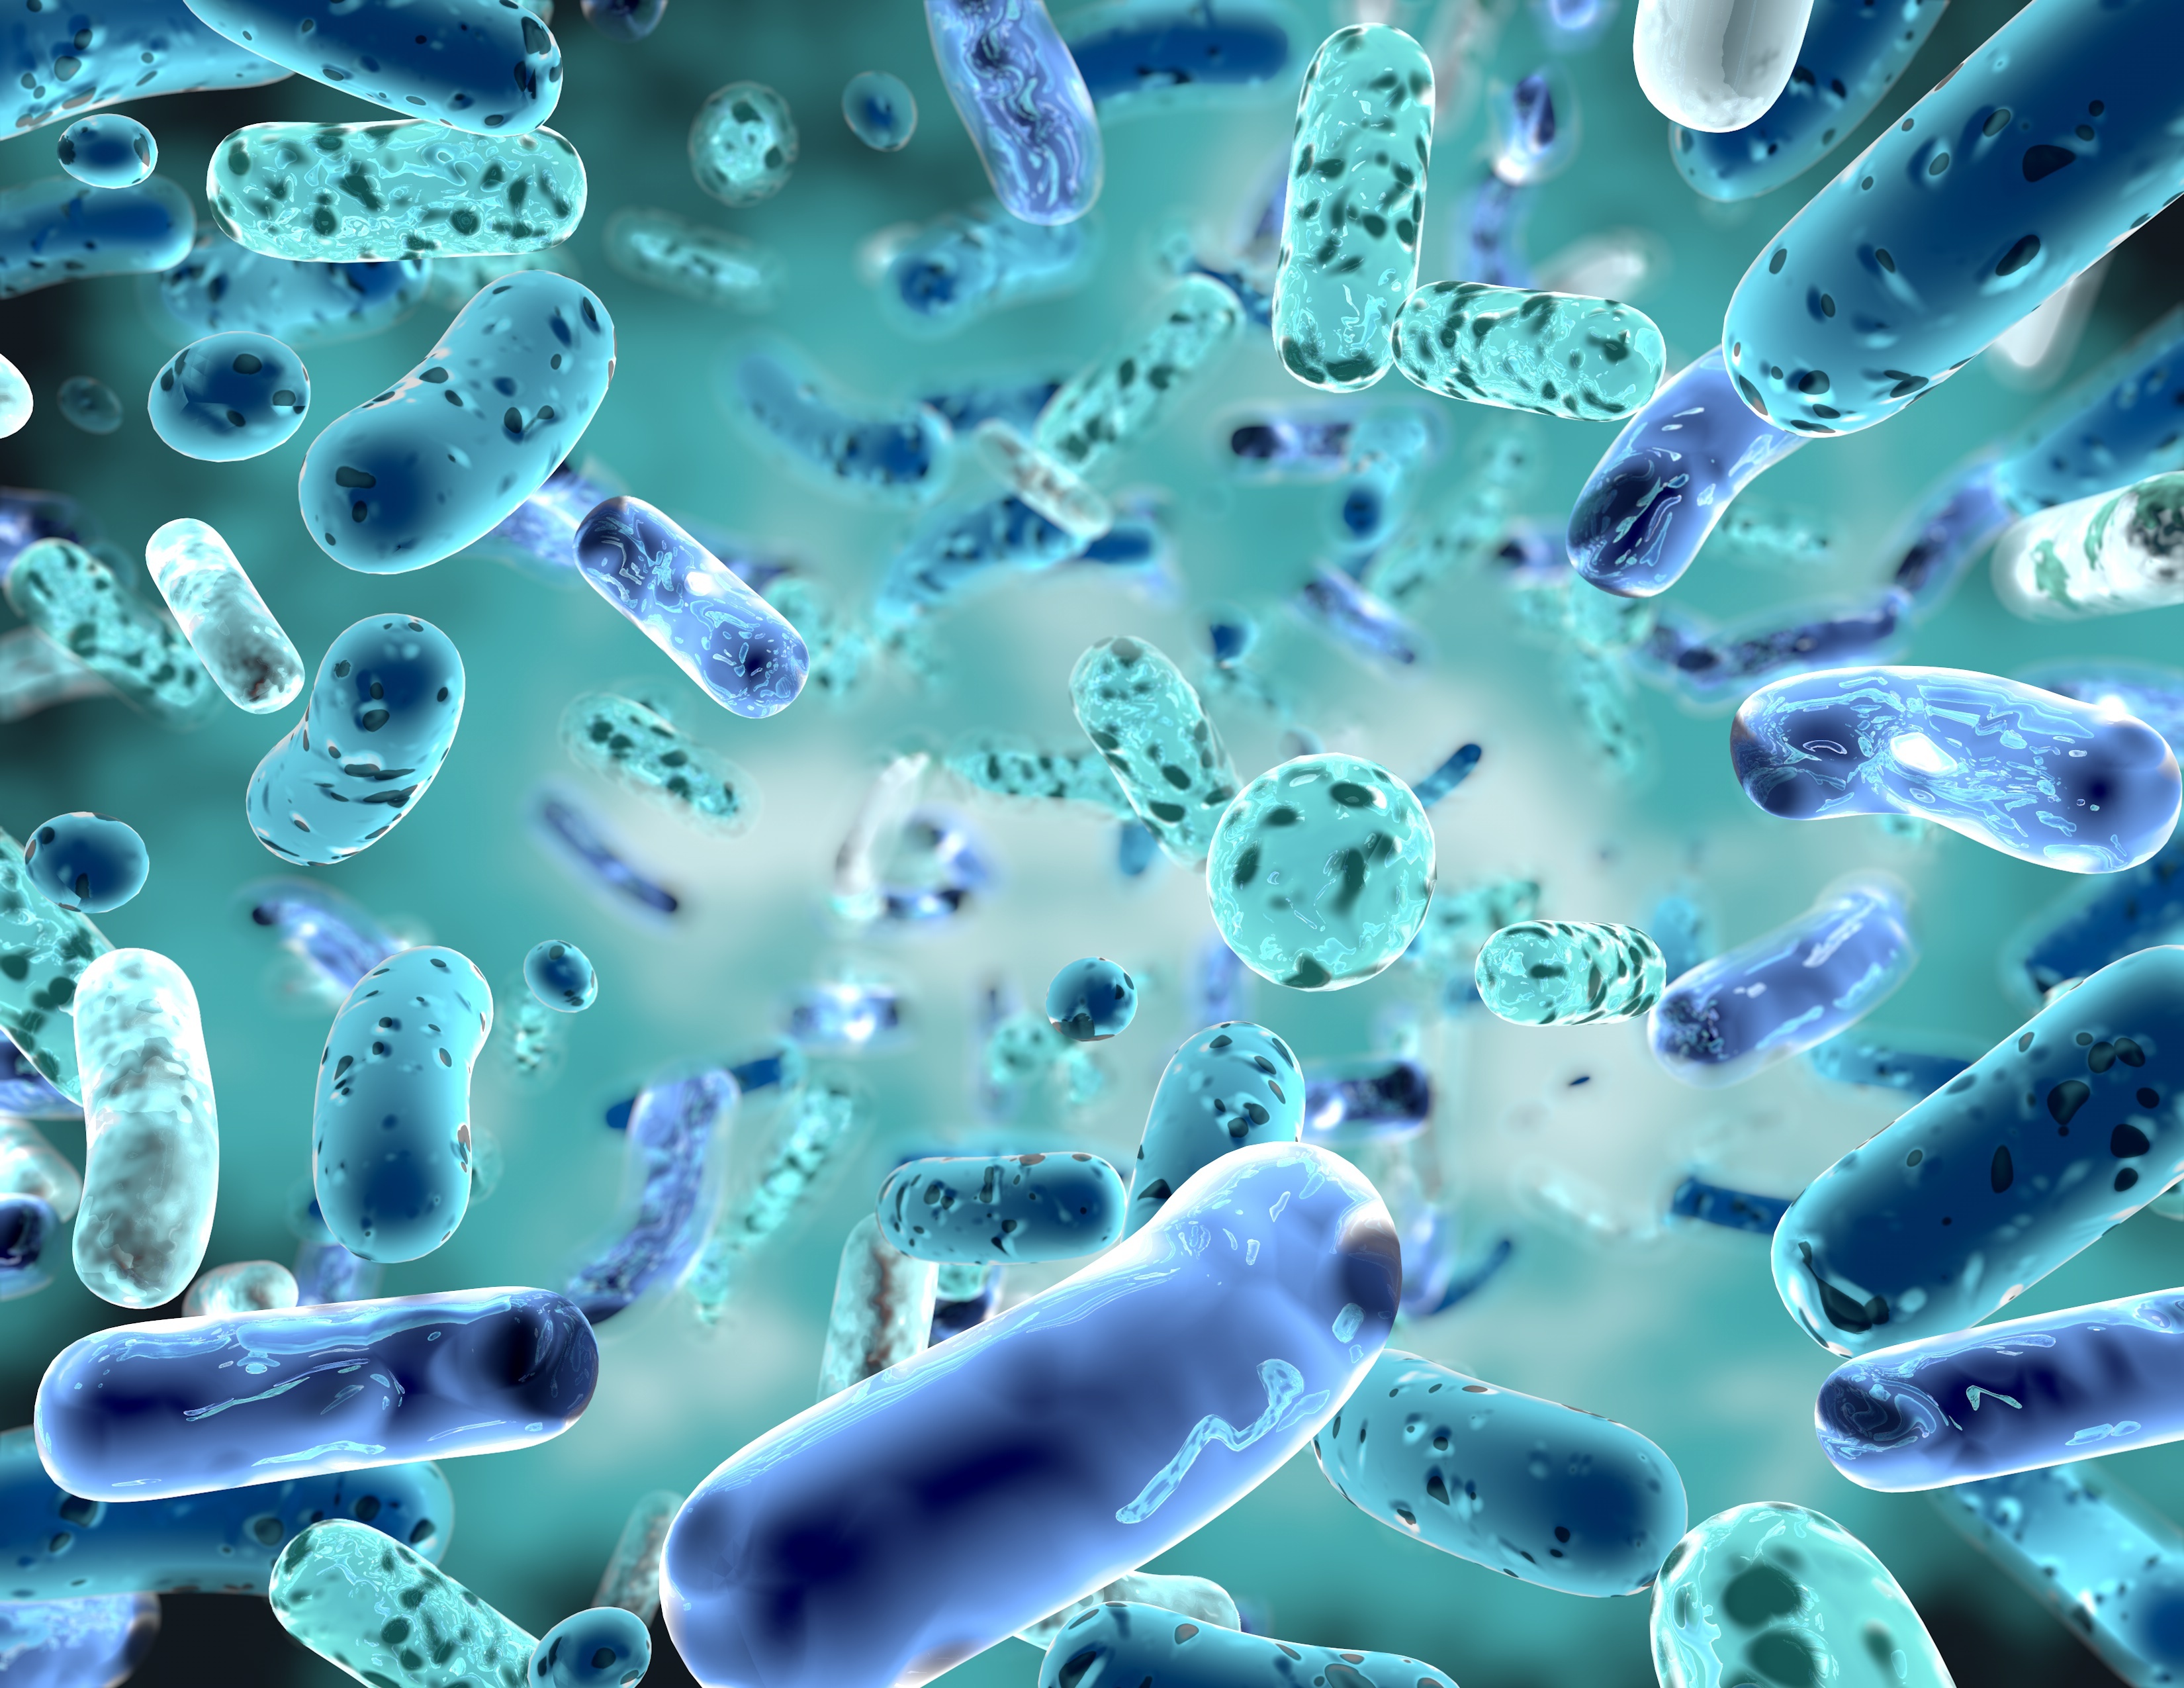 Учёные узнали, что бактерии могут издавать звуки